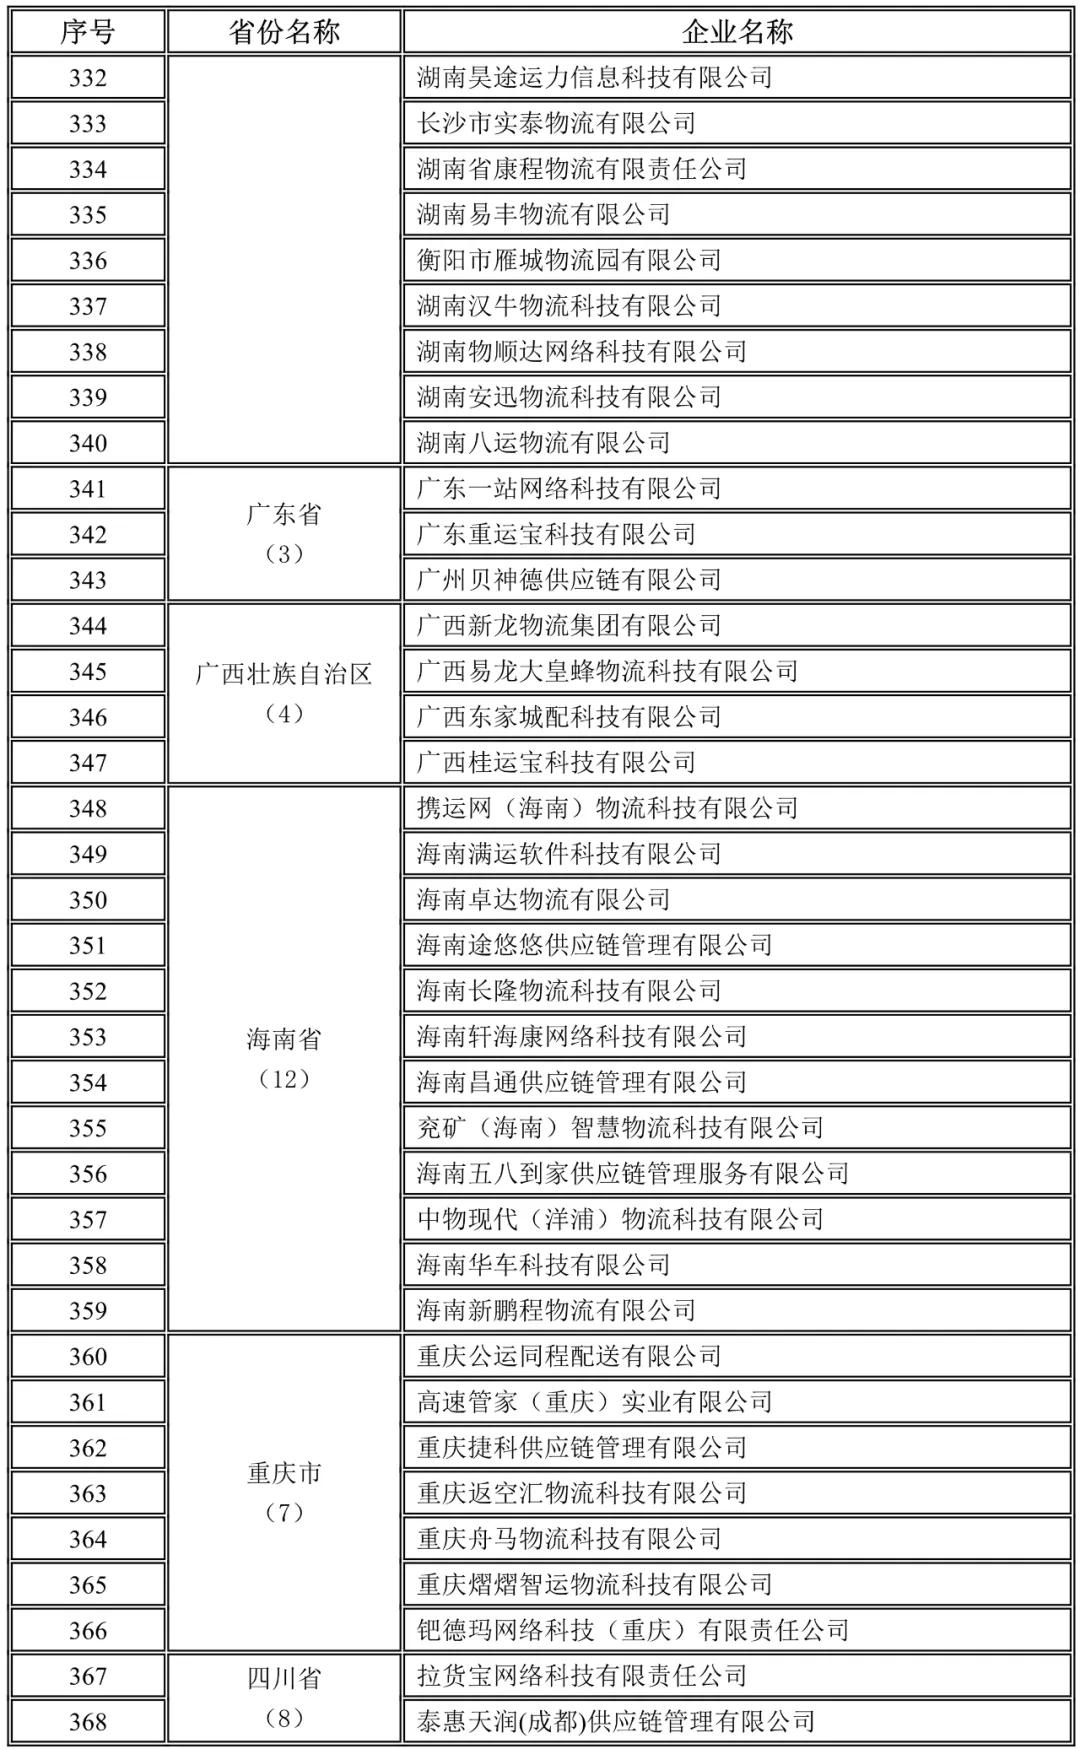 湖南,广东,广西,海南,重庆,四川未上传驾驶员位置单证信息企业名录